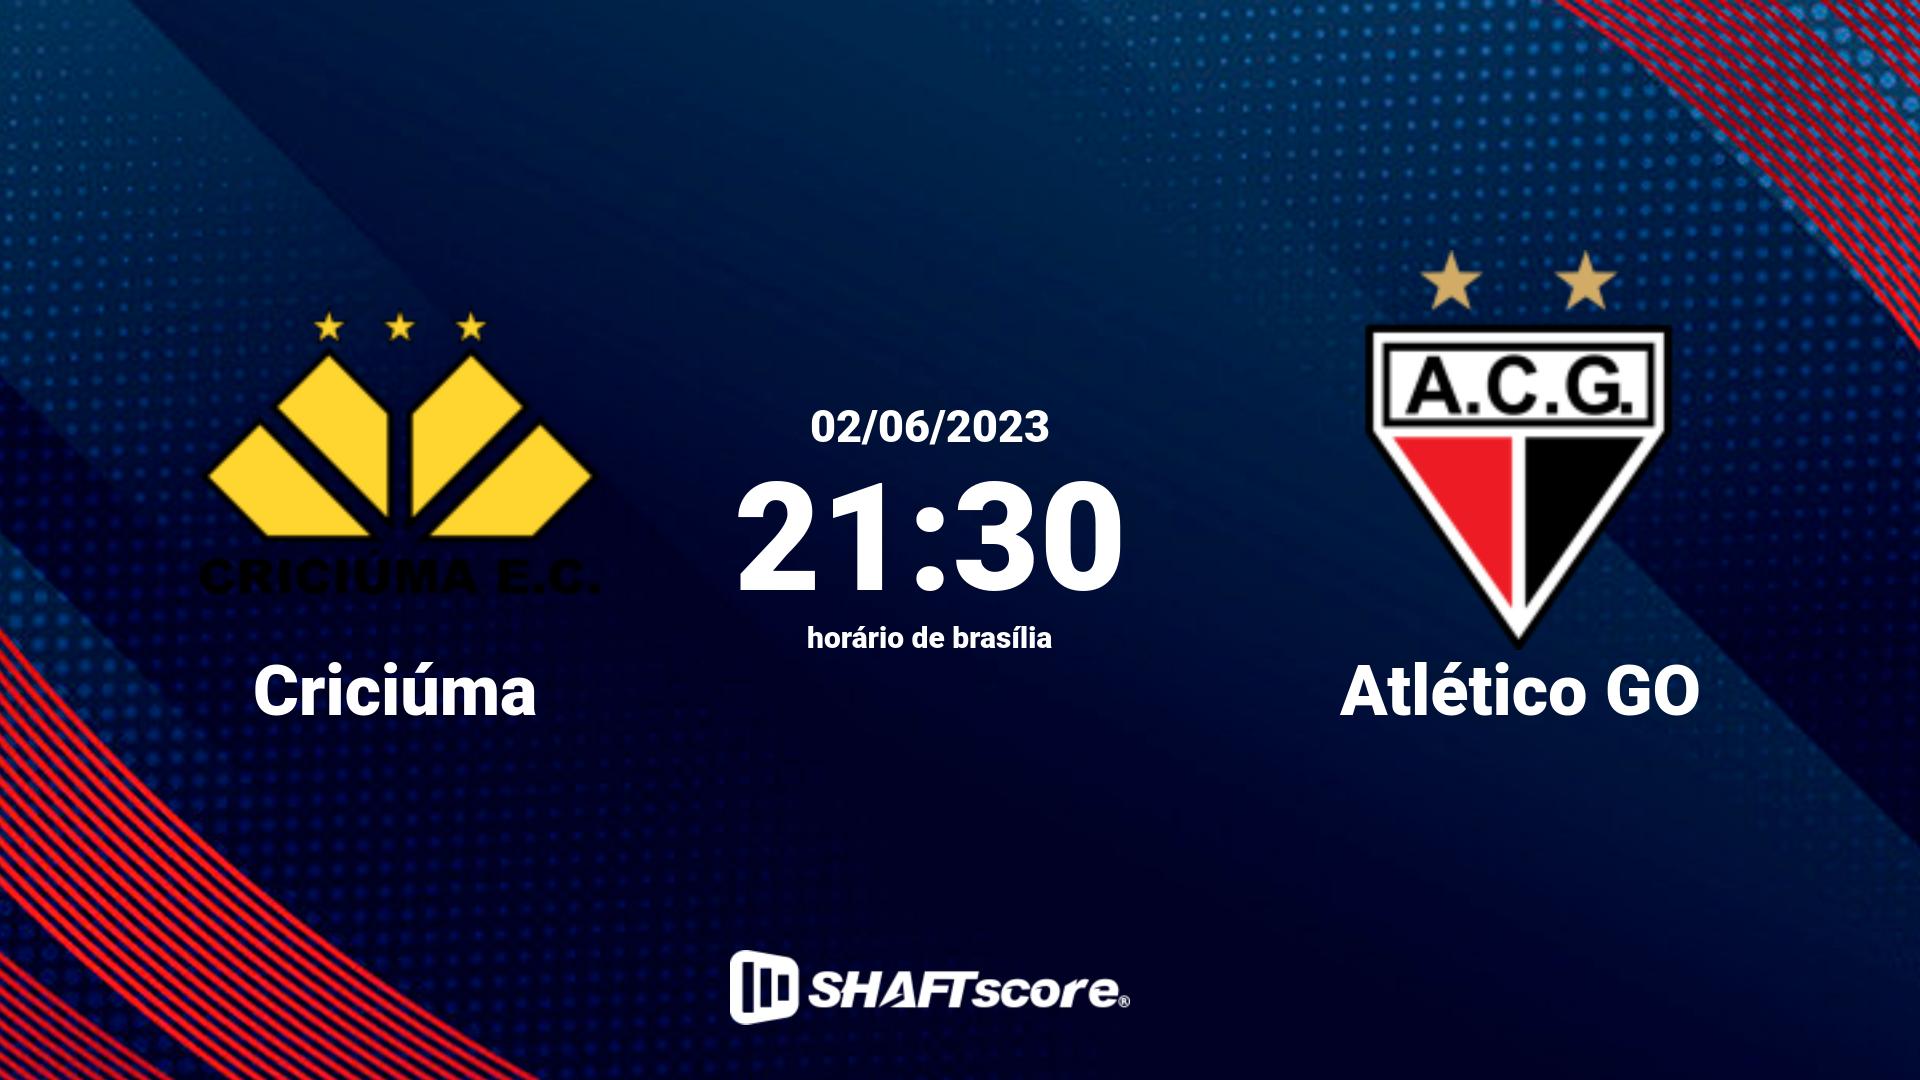 Estatísticas do jogo Criciúma vs Atlético GO 02.06 21:30